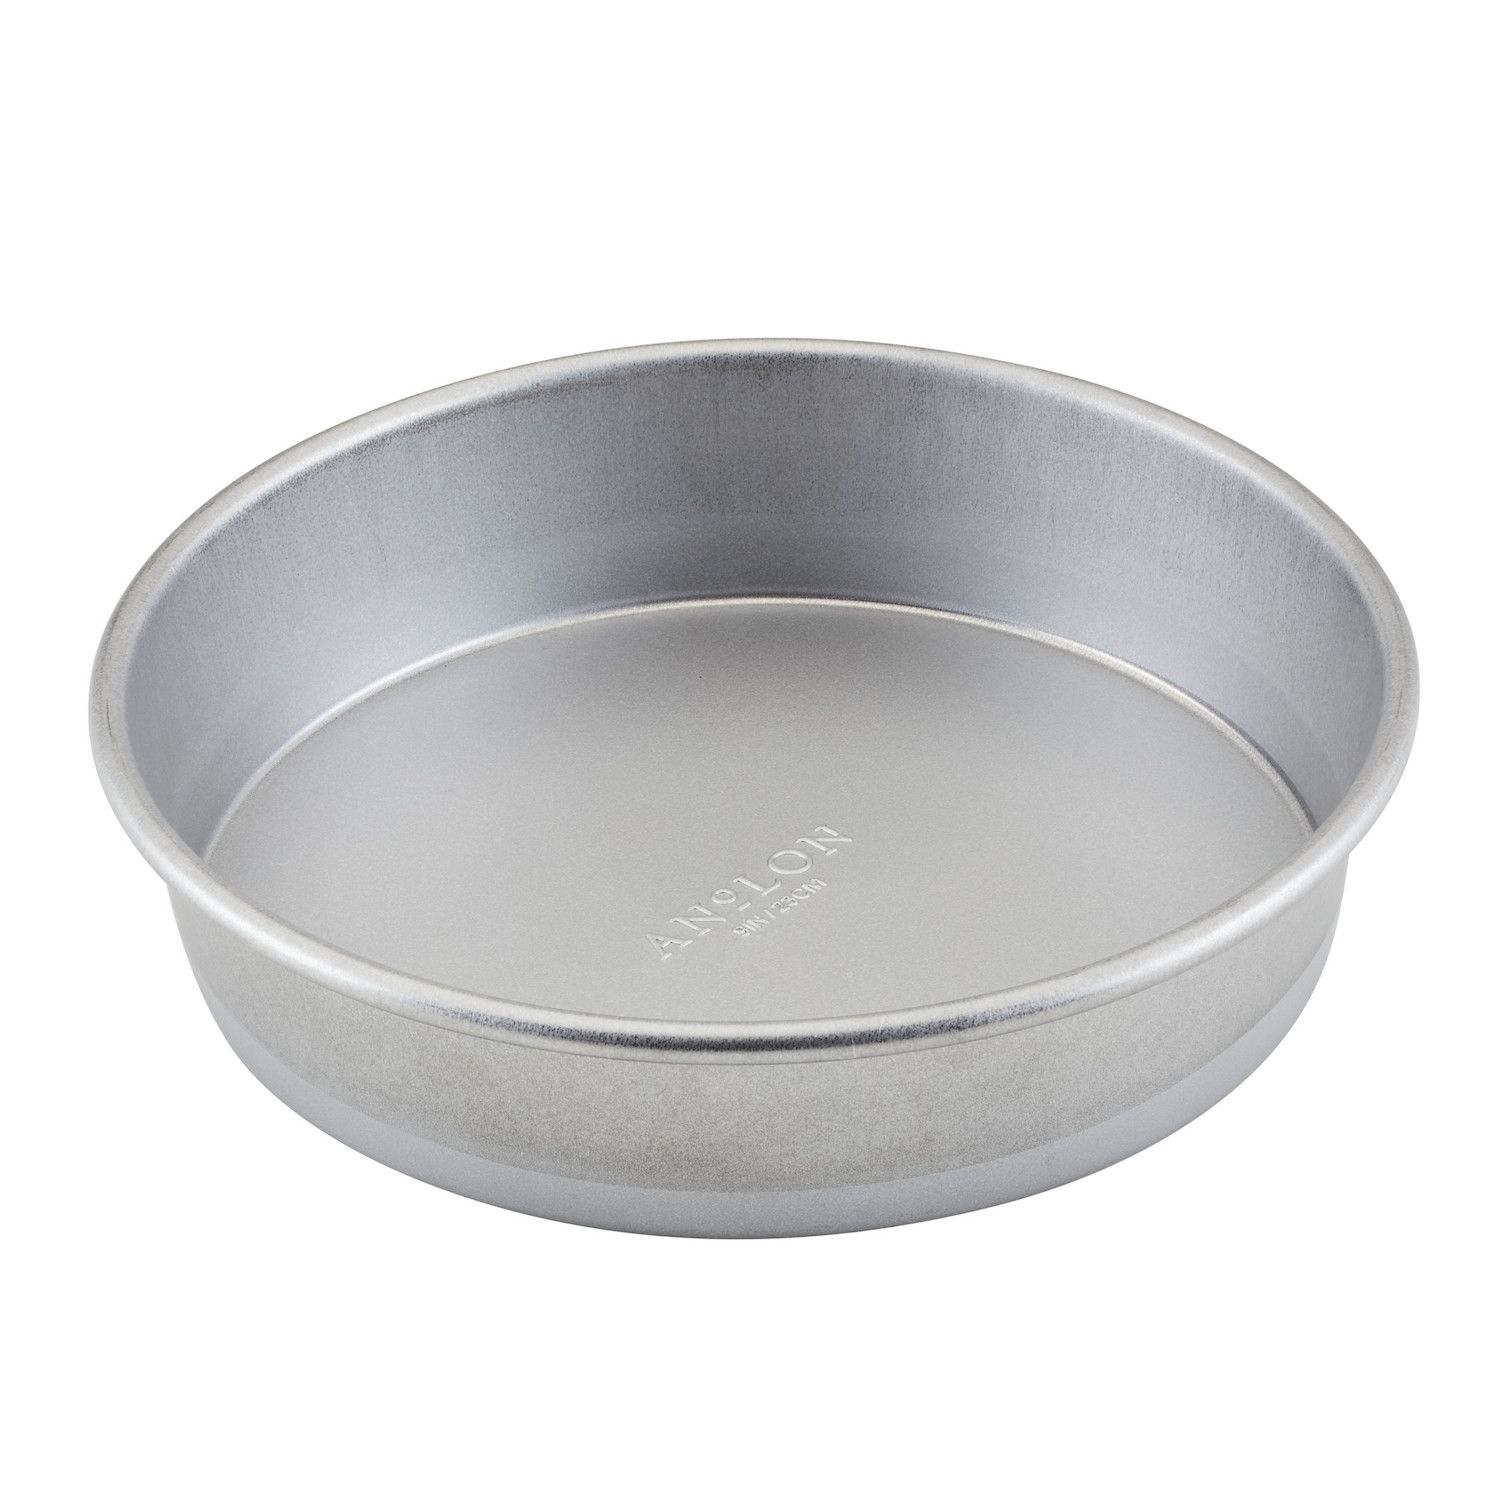 Anolon Advanced Bakeware Nonstick Springform Pan, 9-Inch, Gray